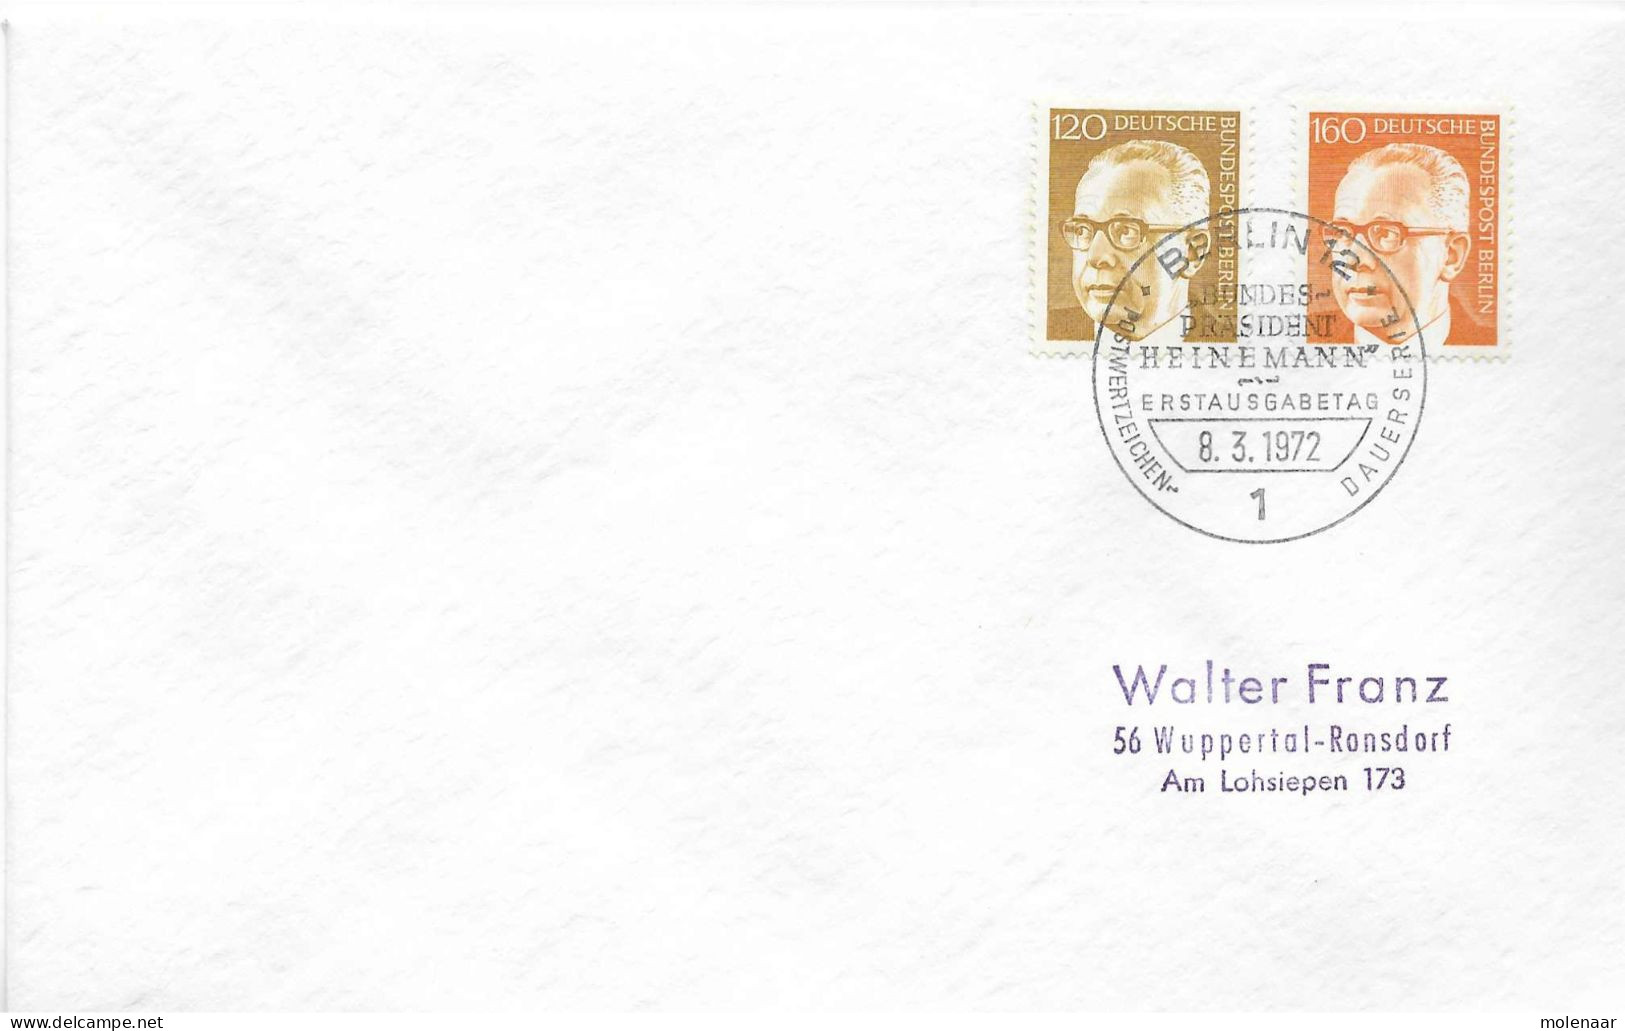 Postzegels > Europa > Duitsland > Berlijn > 1970-1979 > Brief Met No. 395 En 396 (17295) - Brieven En Documenten